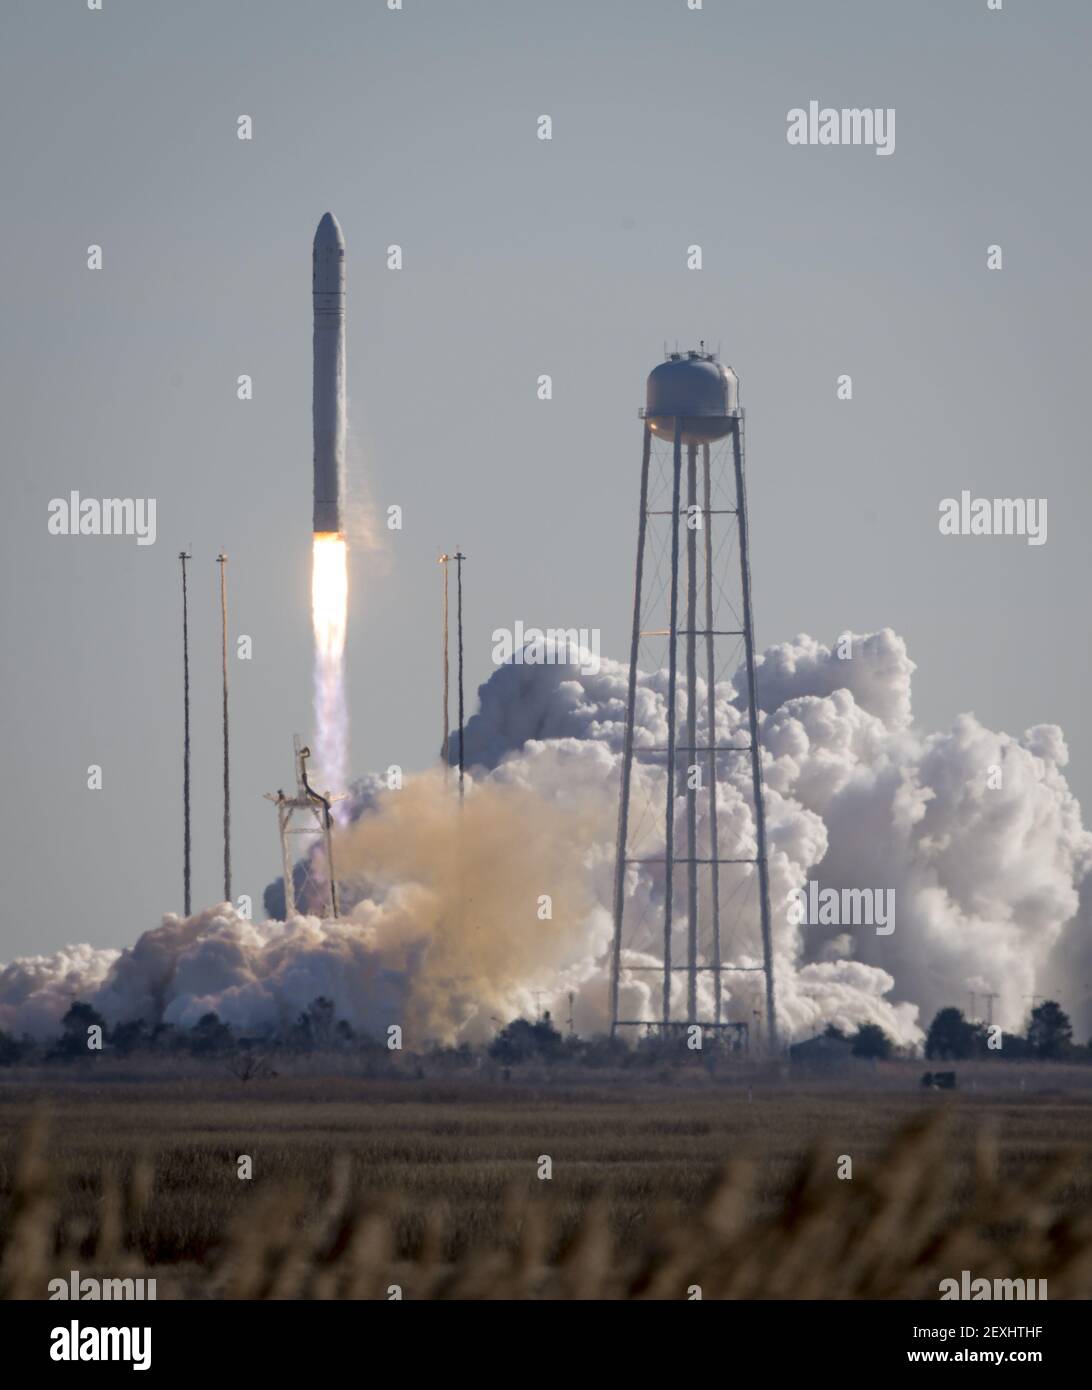 Un razzo Antares di Orbital Sciences Corporation è visto come viene lanciato da Pad-0A alla NASA Wallops Flight Facility, Giovedi, 9 gennaio 2014, Wallops Island, VA. Antares sta trasportando la navetta spaziale Cygnus su una missione di rifornimento del carico alla Stazione spaziale Internazionale. La missione Orbital-1 è il primo volo di consegna merci contratto di Orbital Sciences alla stazione spaziale per la NASA. Cygnus porta alla stazione spaziale esperimenti scientifici, materiale per equipaggio, ricambi e altri componenti hardware. Image Credit: Bill Ingalls/NASA/Sipa USA Foto Stock